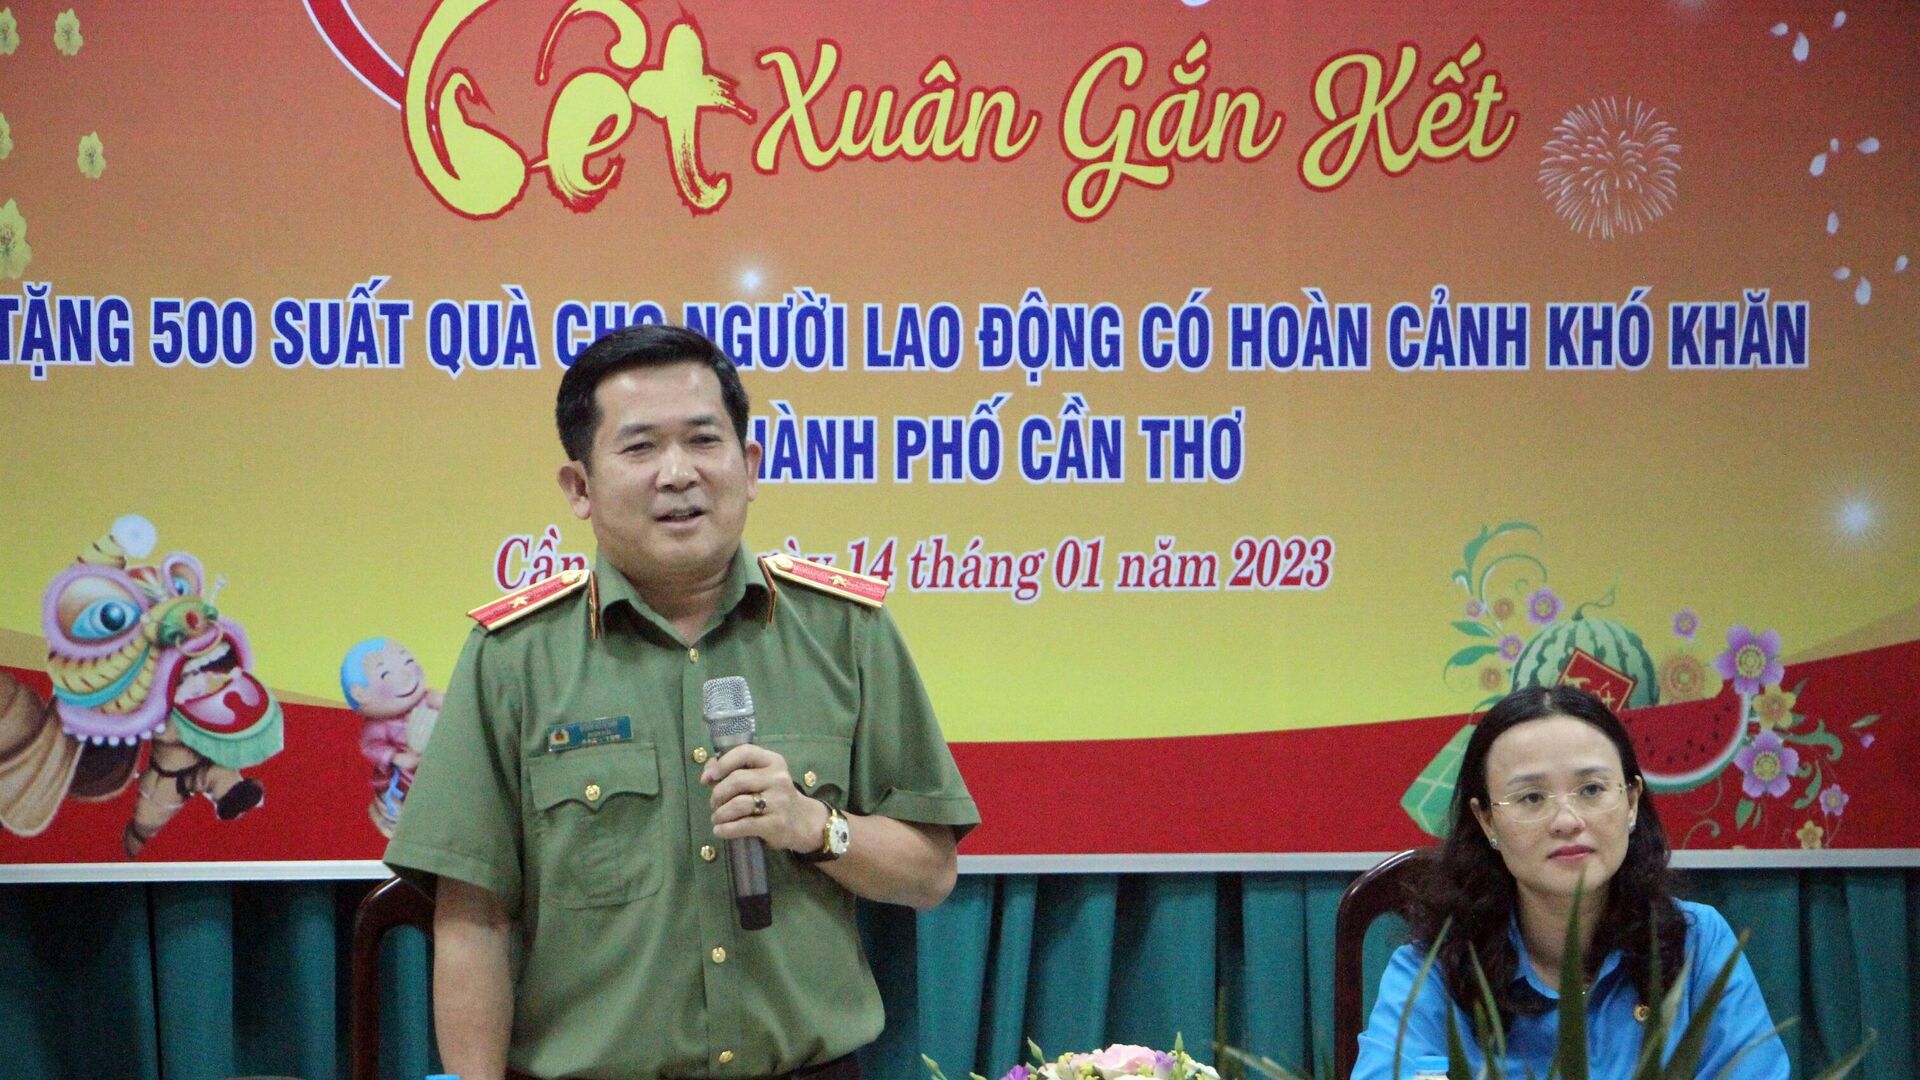 Công an tỉnh Quảng Ninh tặng quà Tết cho người lao động khó khăn tại Cần Thơ - Sputnik Việt Nam, 1920, 15.01.2023